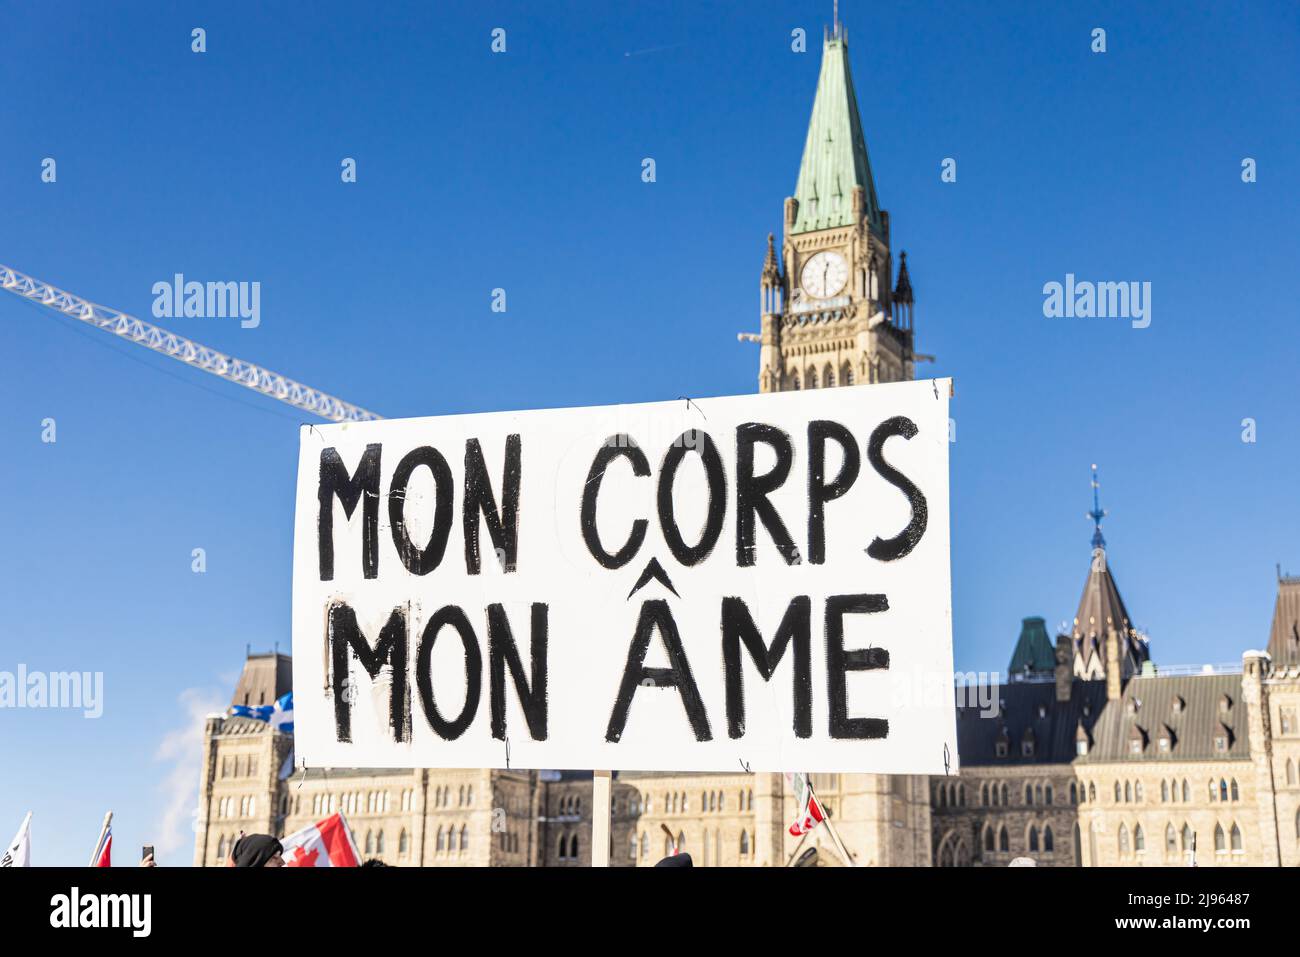 Nahaufnahme selektive Fokusansicht eines französisch-kanadischen Plakat, das meinen Körper während einer Antivax-Kundgebung mit verschwommenen parlamentsgebäuden im Hintergrund als meine Seele ausgibt. Stockfoto